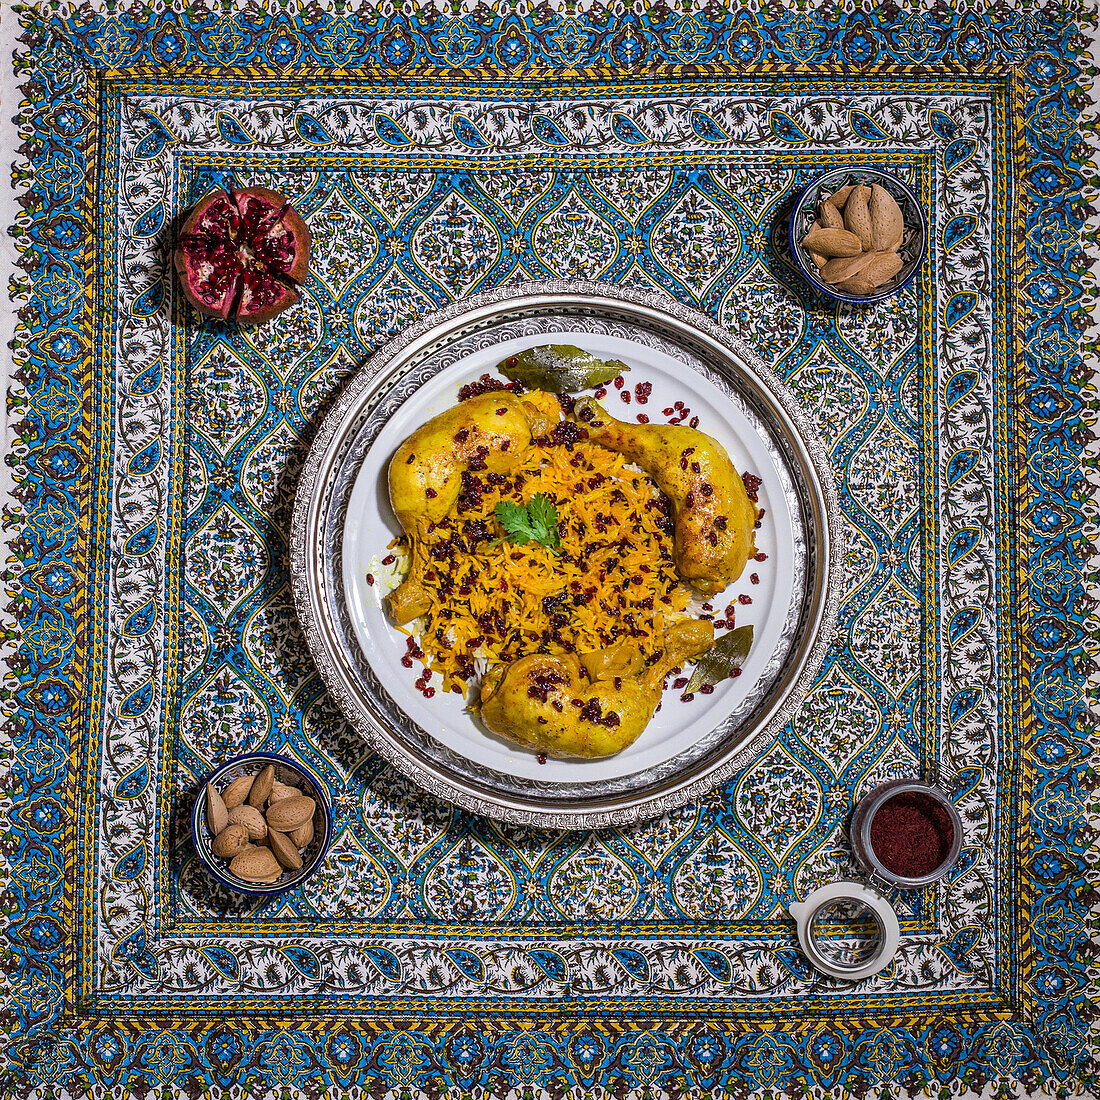 Hähnchenkeulen mit Safranreis und karamelisierten Berberitzen, iranisches Shirin Polo, Iran